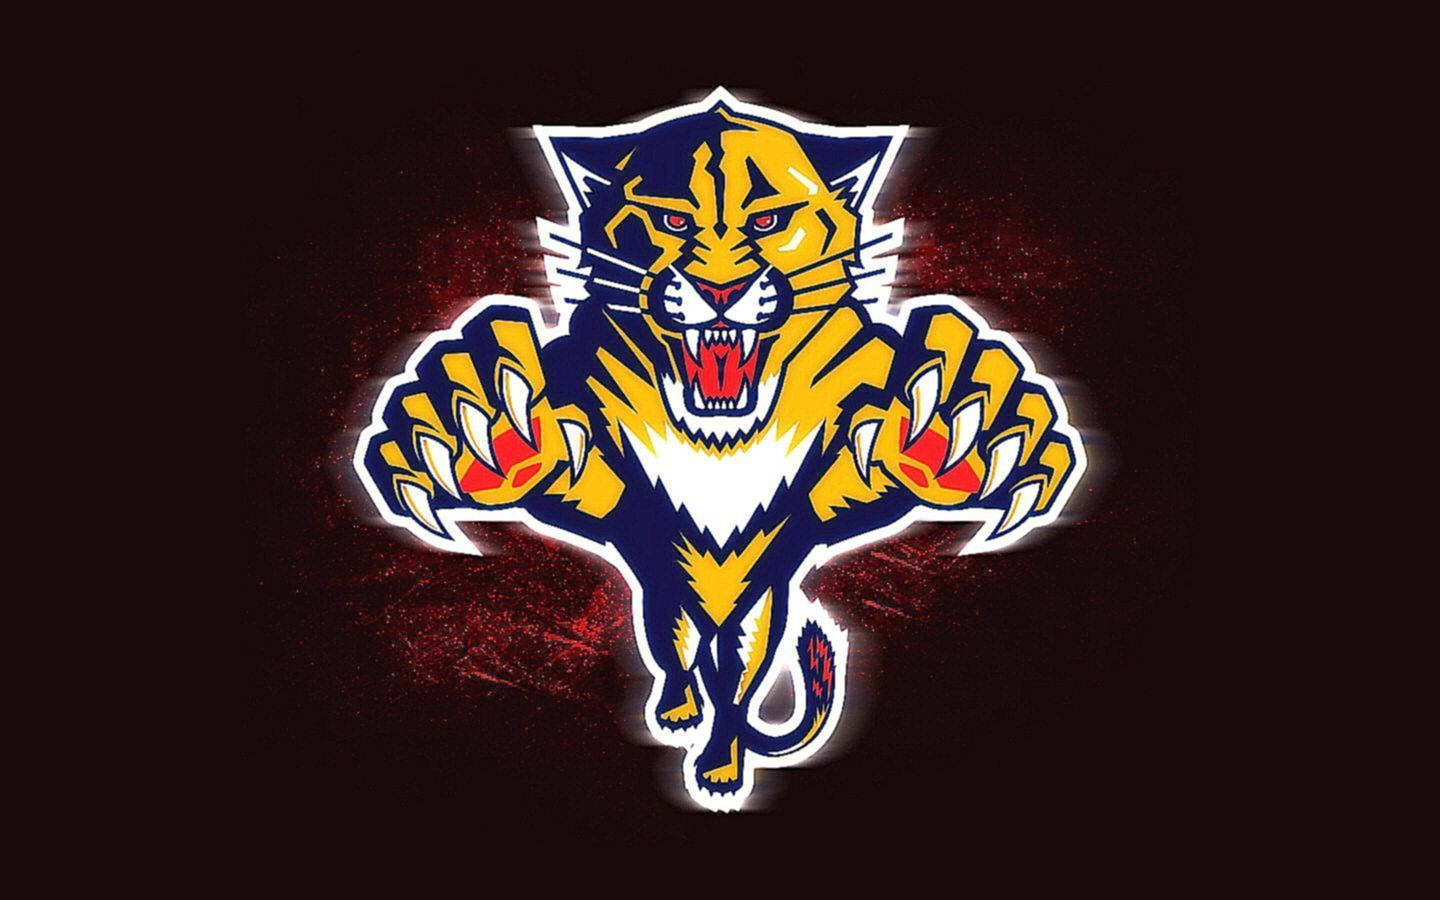 Florida Panthers Team